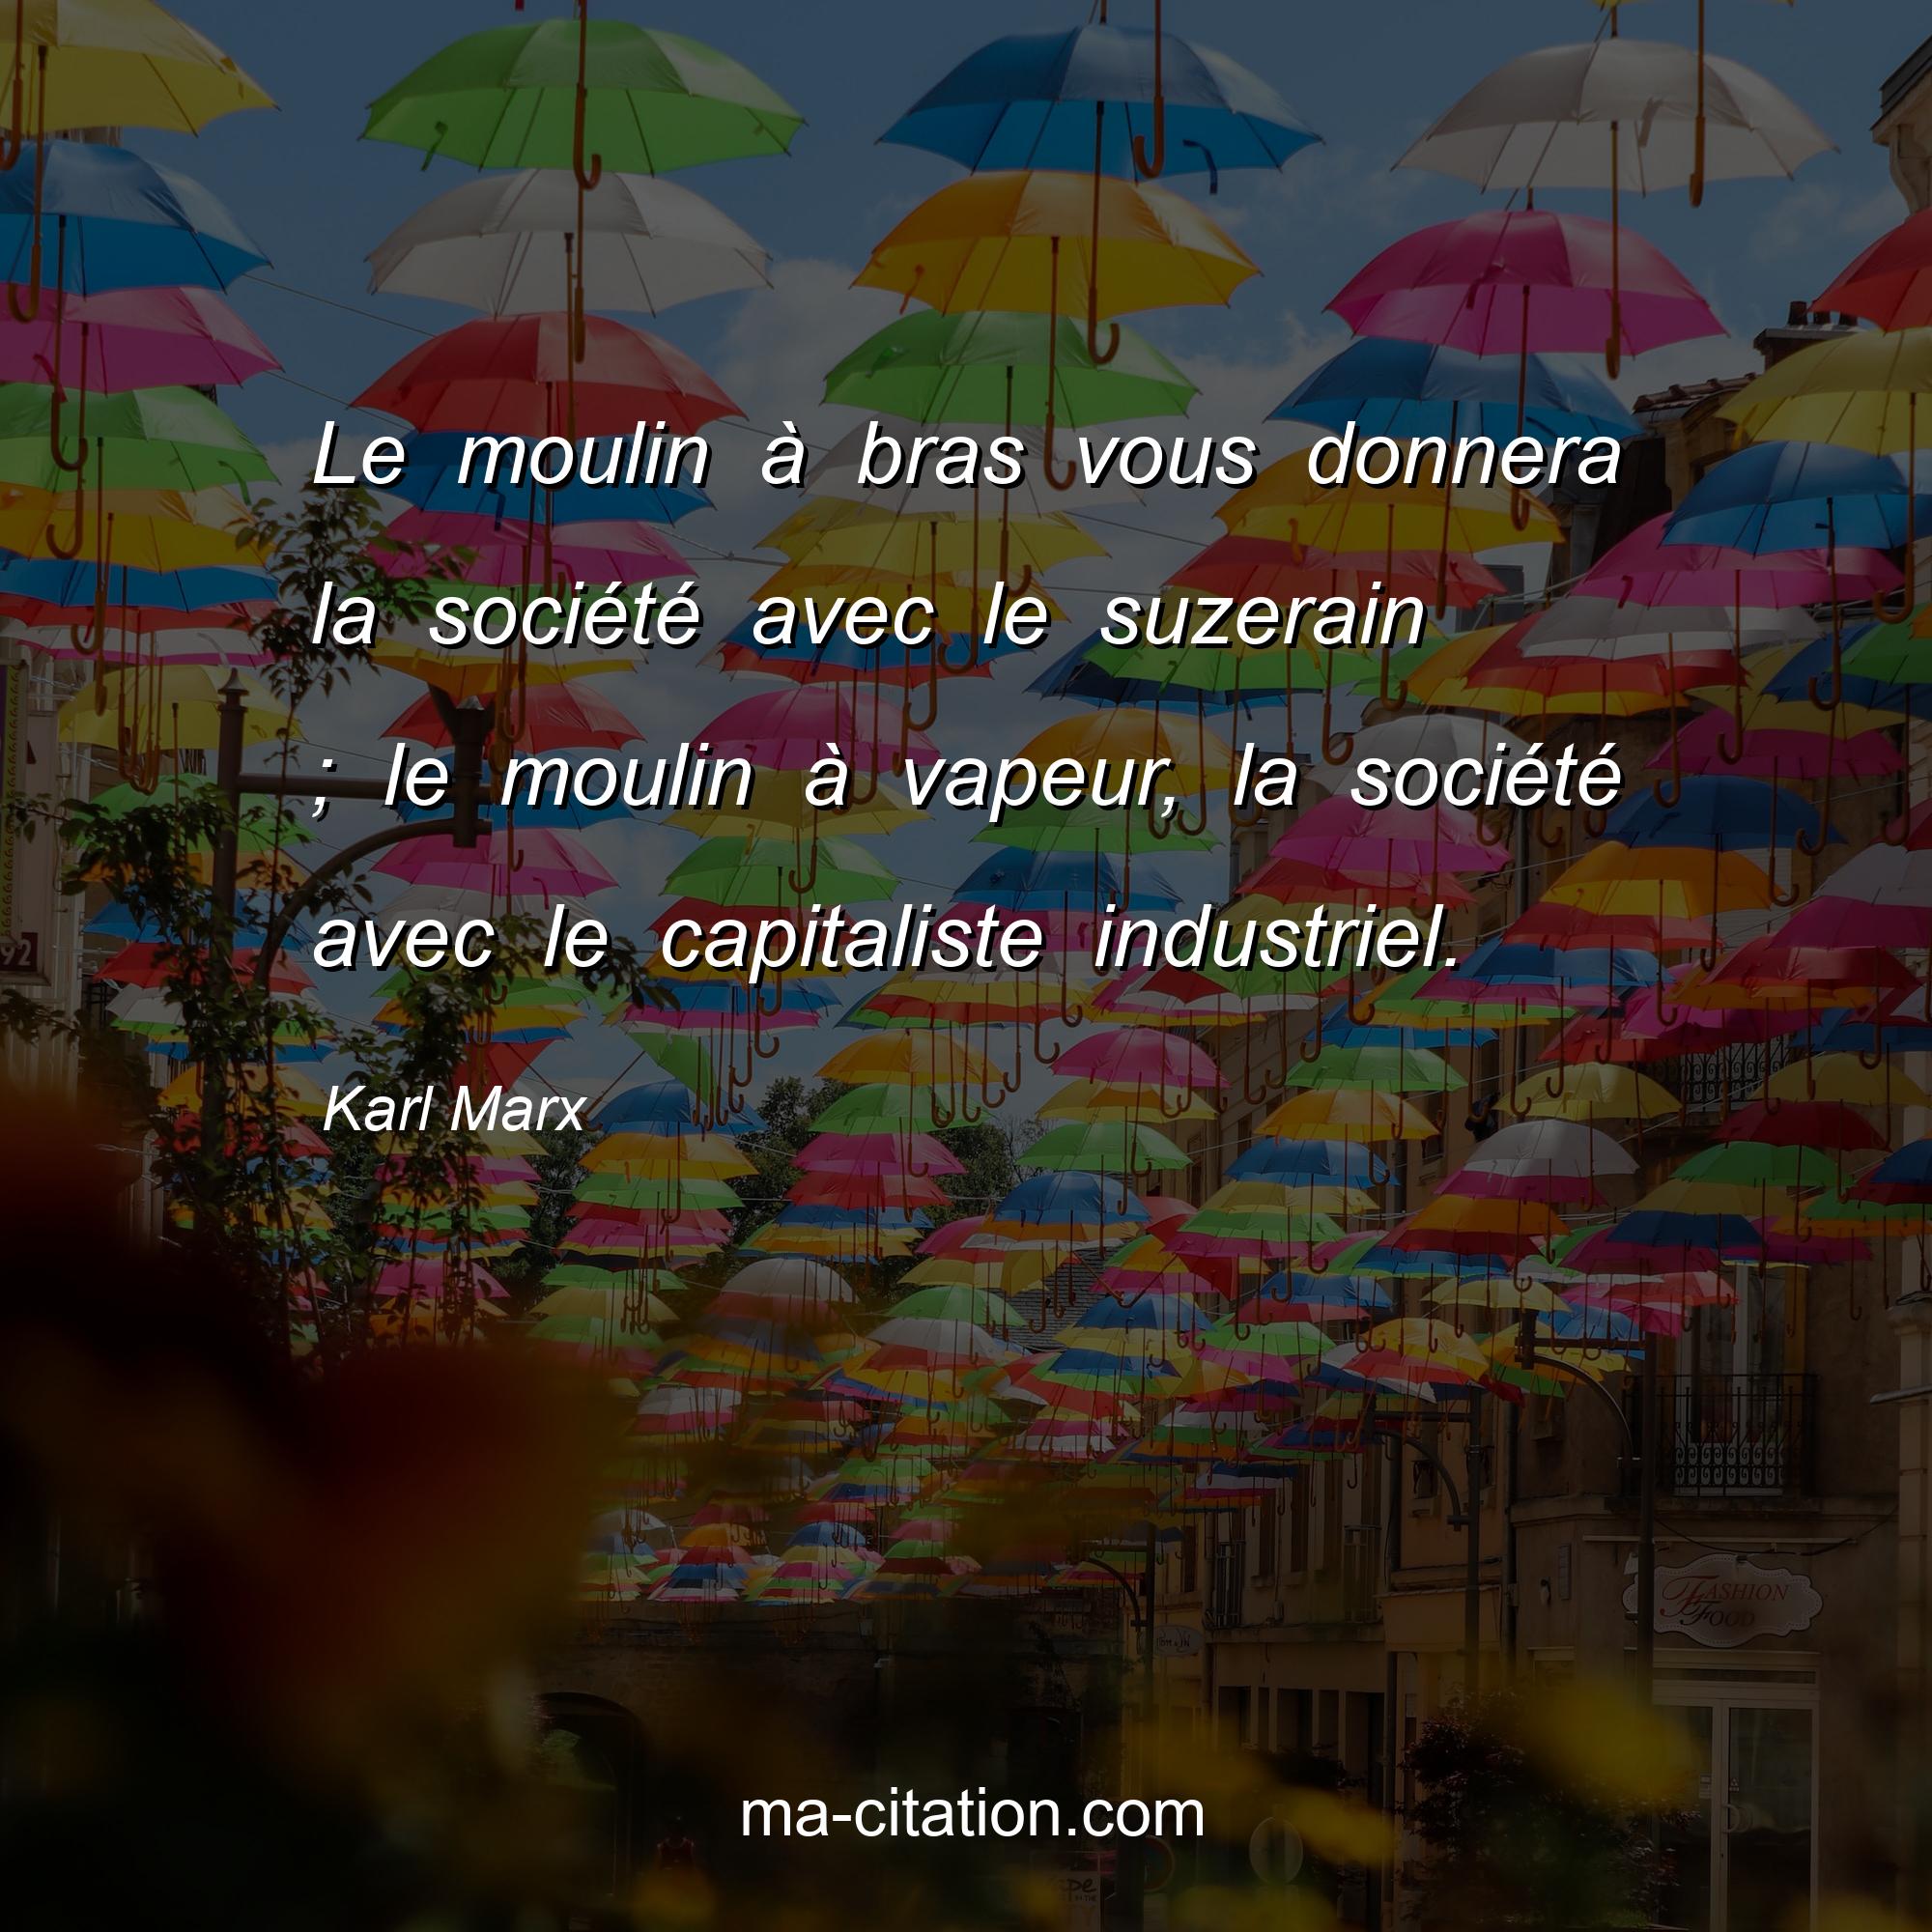 Karl Marx : Le moulin à bras vous donnera la société avec le suzerain ; le moulin à vapeur, la société avec le capitaliste industriel.